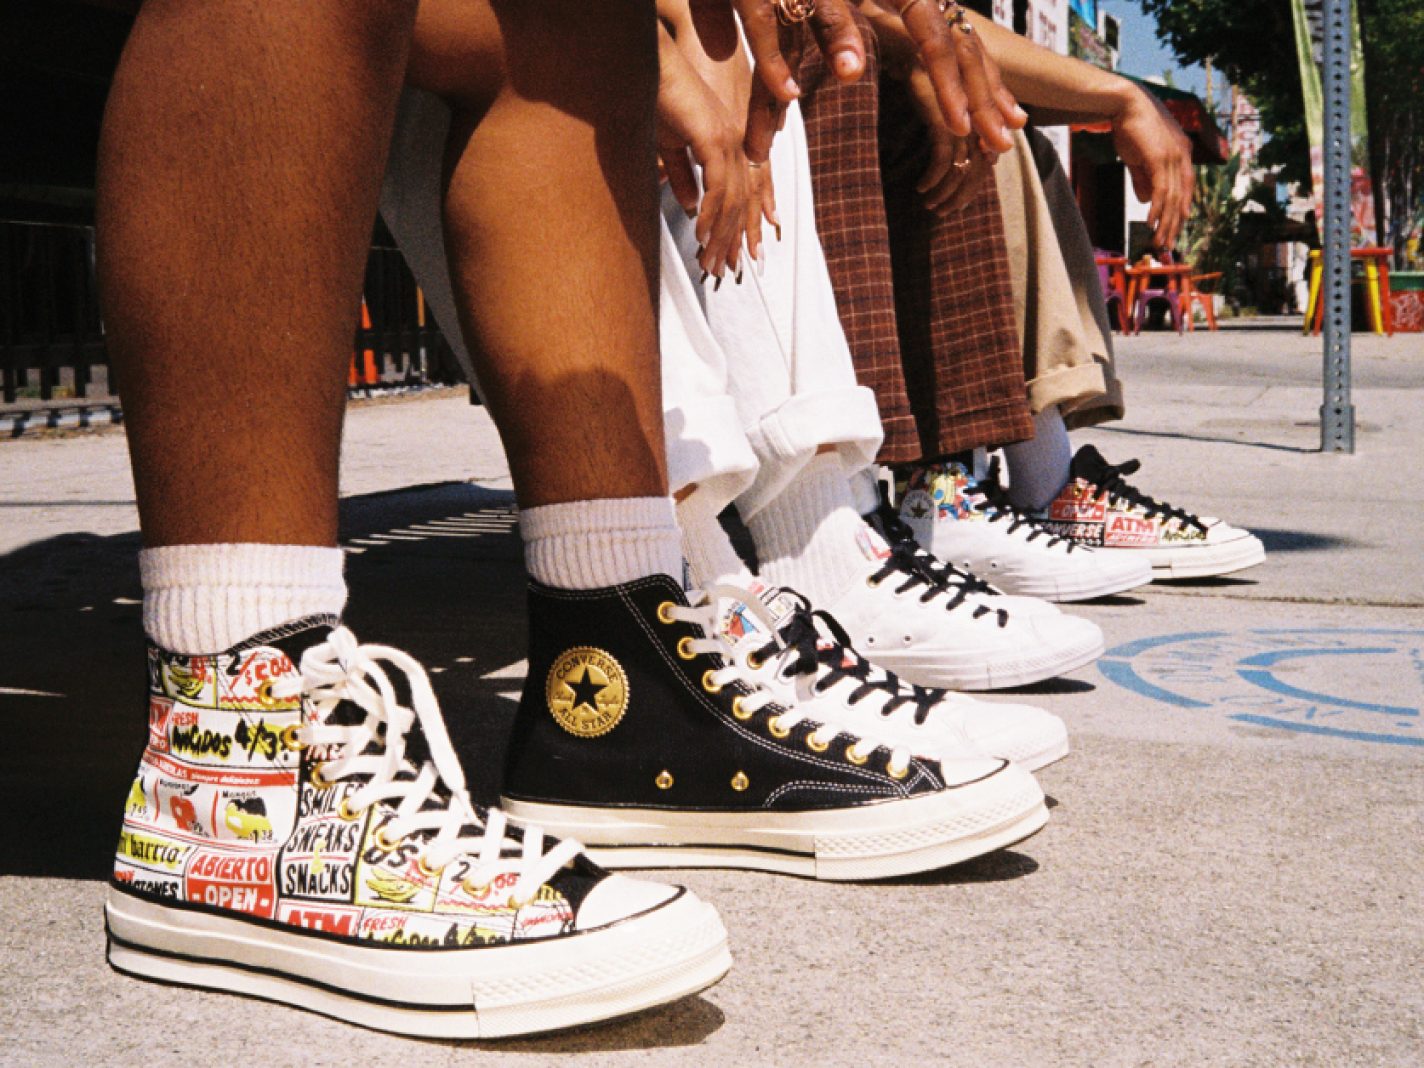 Aanmoediging Van leven Converse Launches “Mi Gente, Mi Barrio” Initiative with Custom Shoes